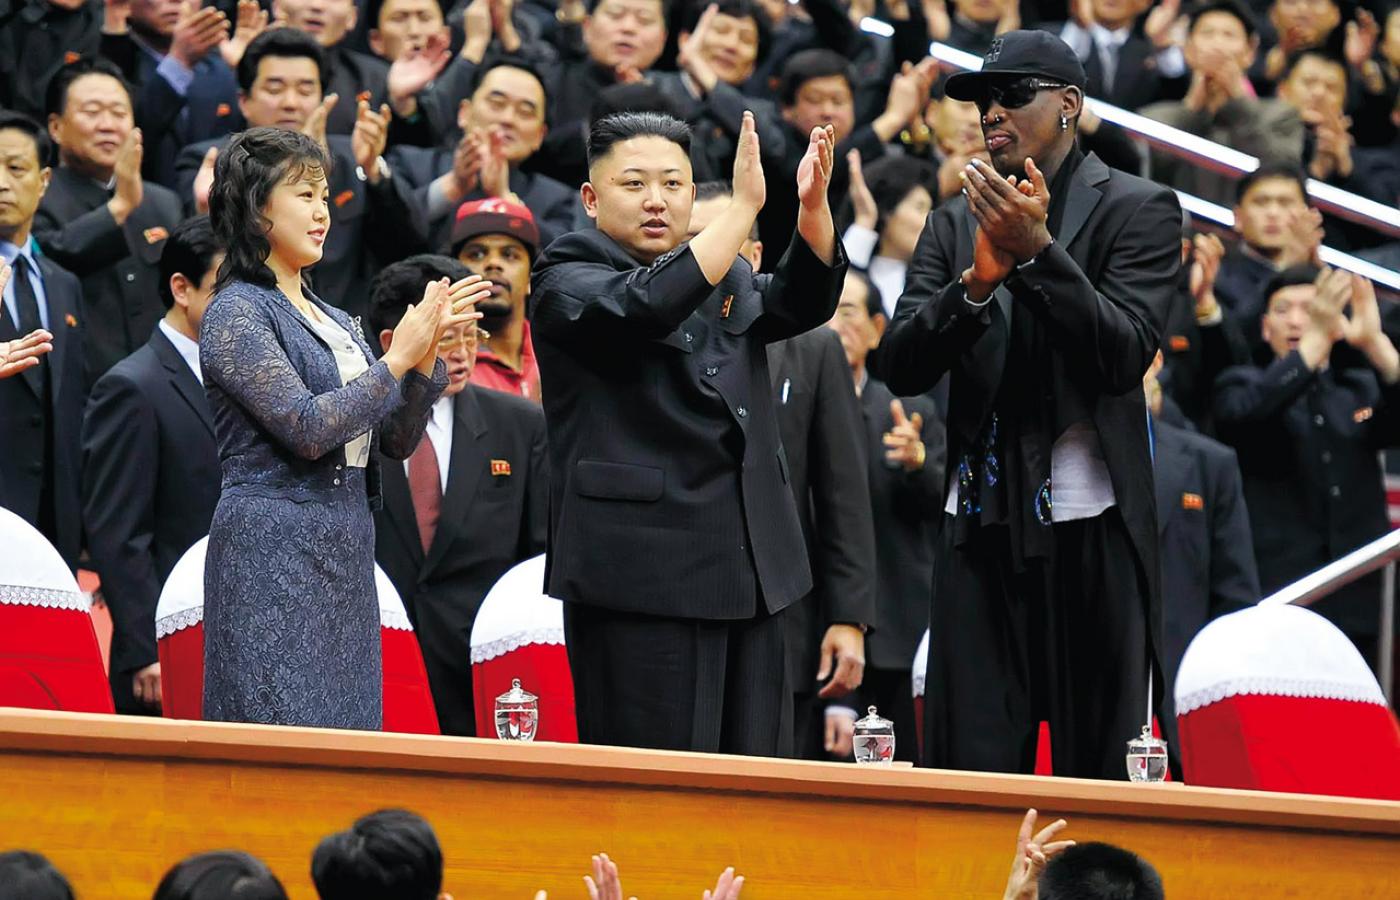 Dennis Rodman, dawna gwiazda NBA, z przywódcą Korei Płn. Kim Dzong Unem i jego żoną Ri Sol Ju podczas meczu koszykówki w Pyongyang.